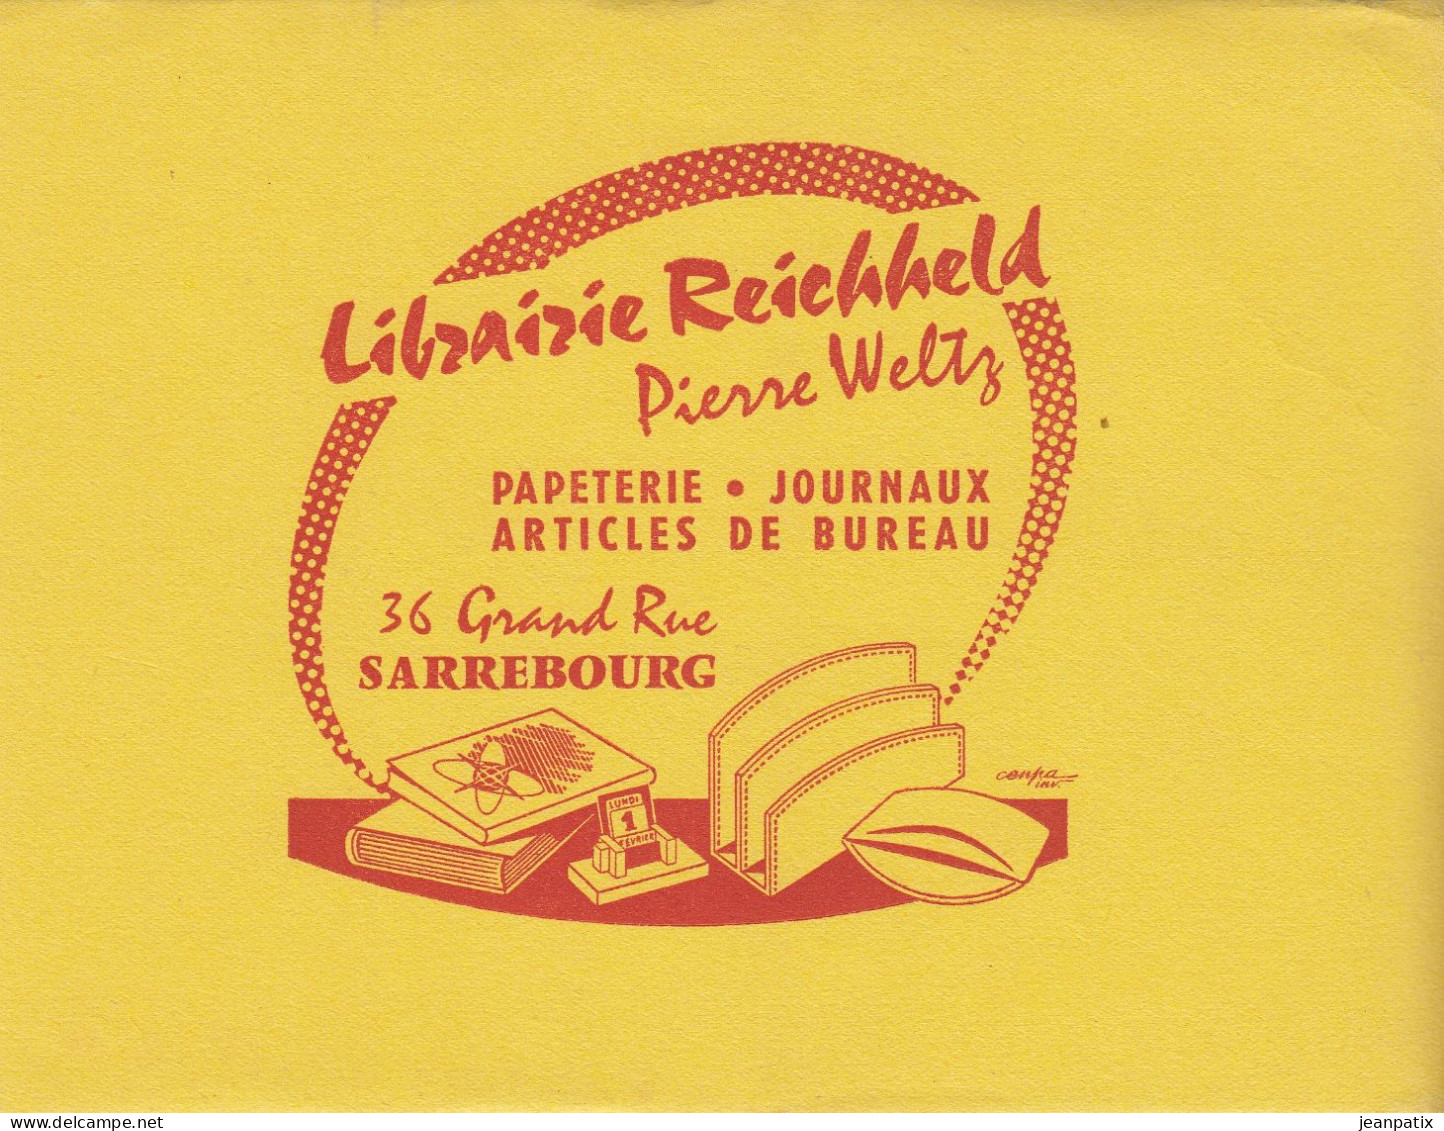 BUVARD & BLOTTER - Librairie REICHHELD - Pierre Weltz - SARREBOURG (Moselle) - Kakao & Schokolade